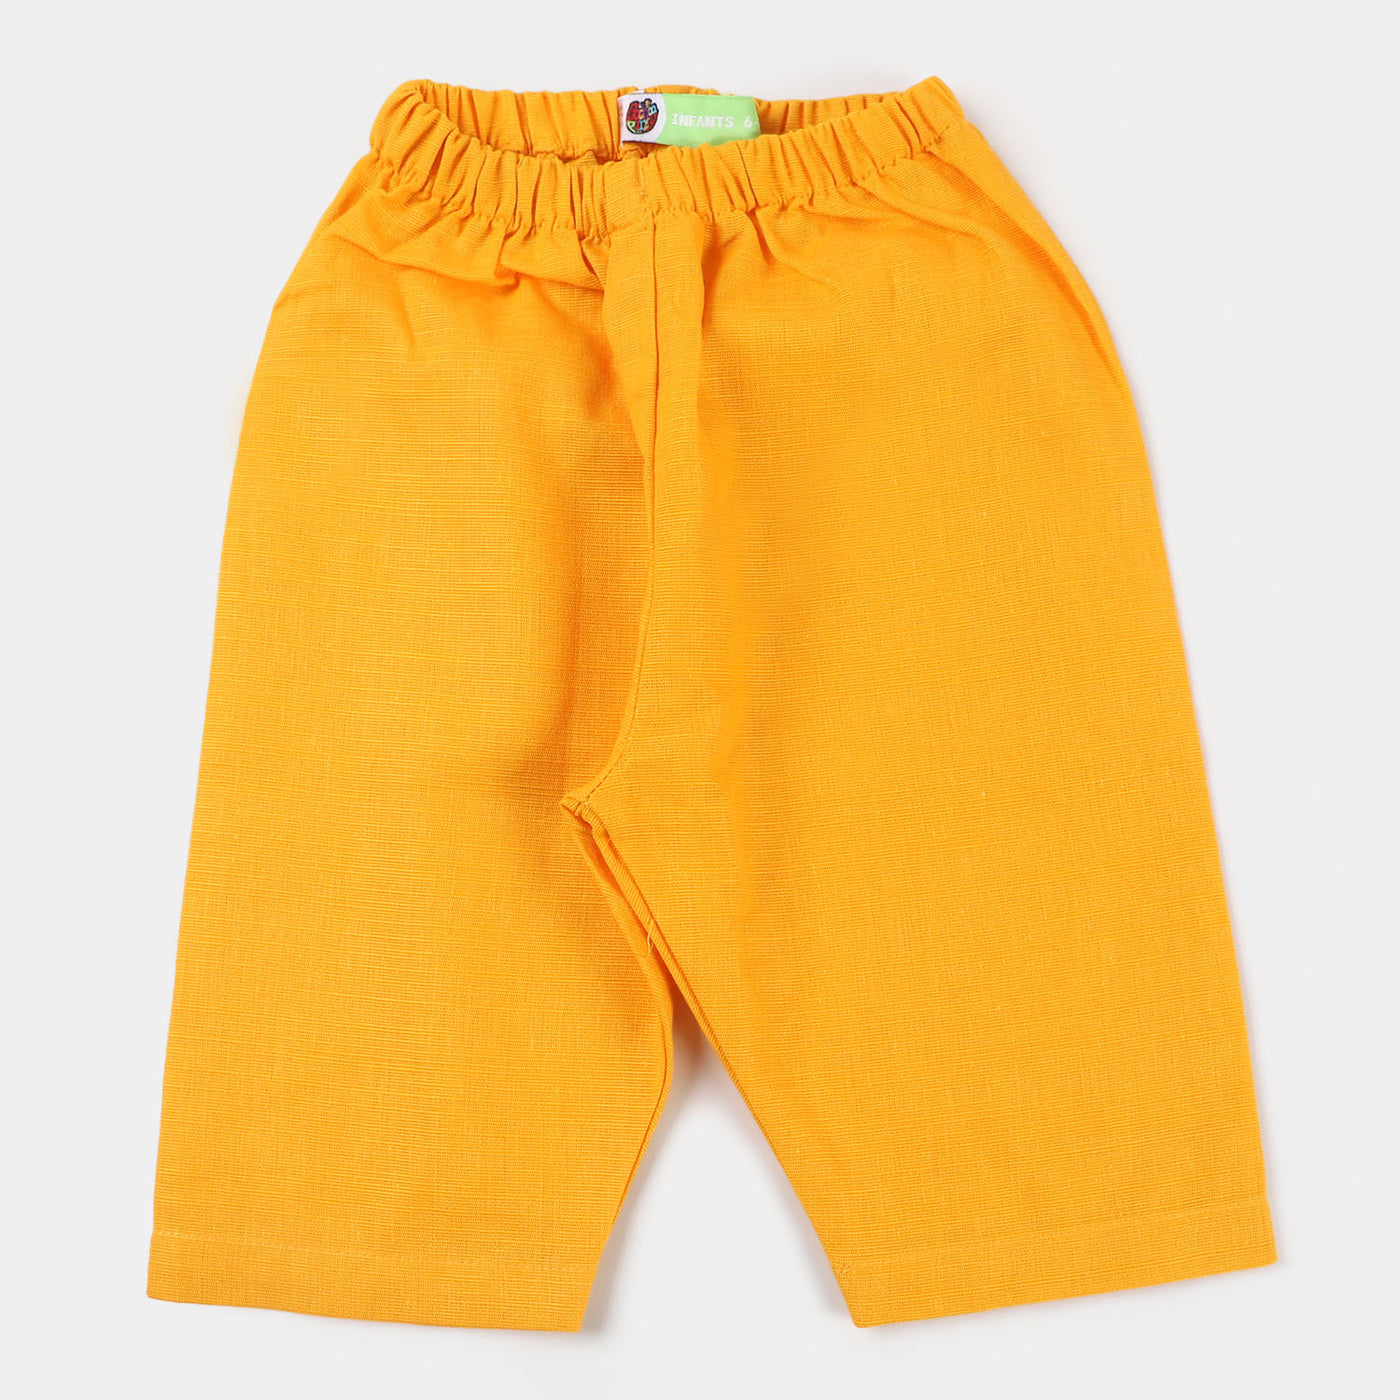 Infant Boys Cotton 3PCs Suit - Citrus